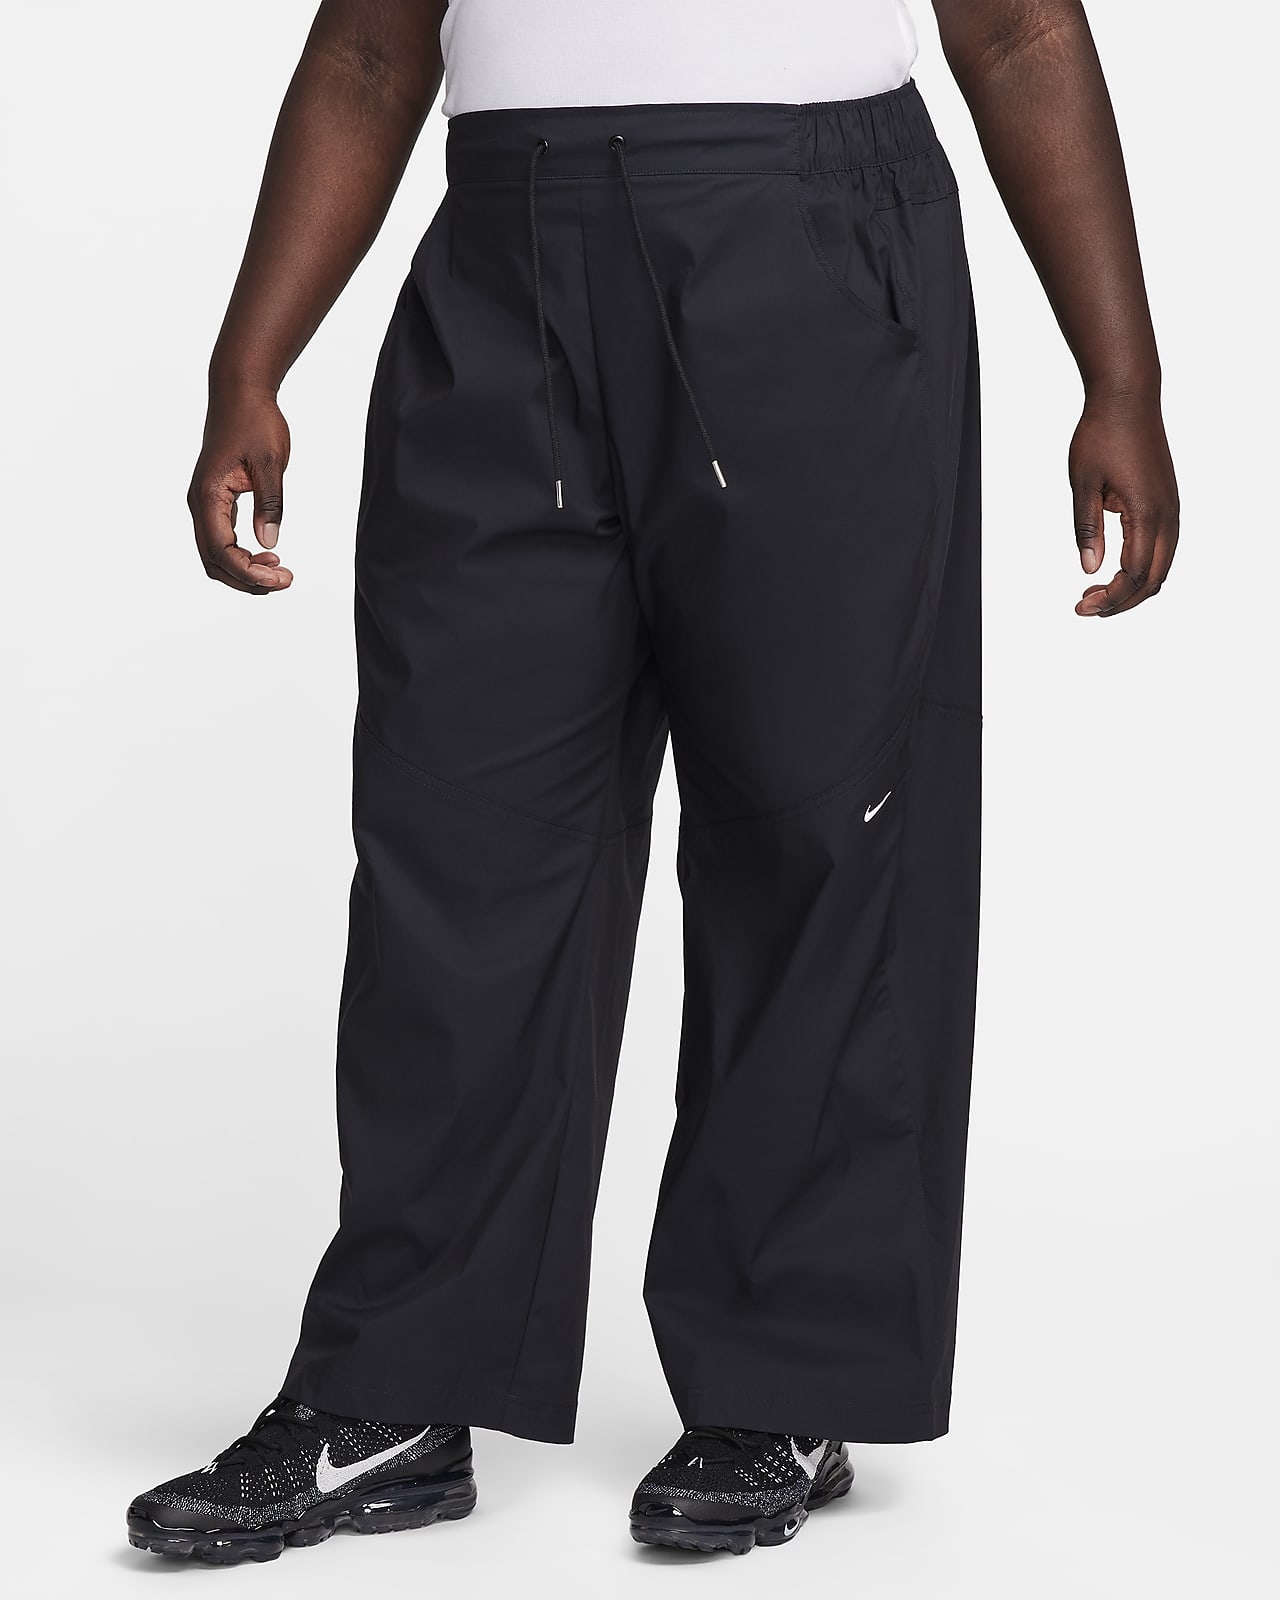 Dámské tkané kalhoty Nike Sportswear Essential s vysokým pasem (větší velikost)